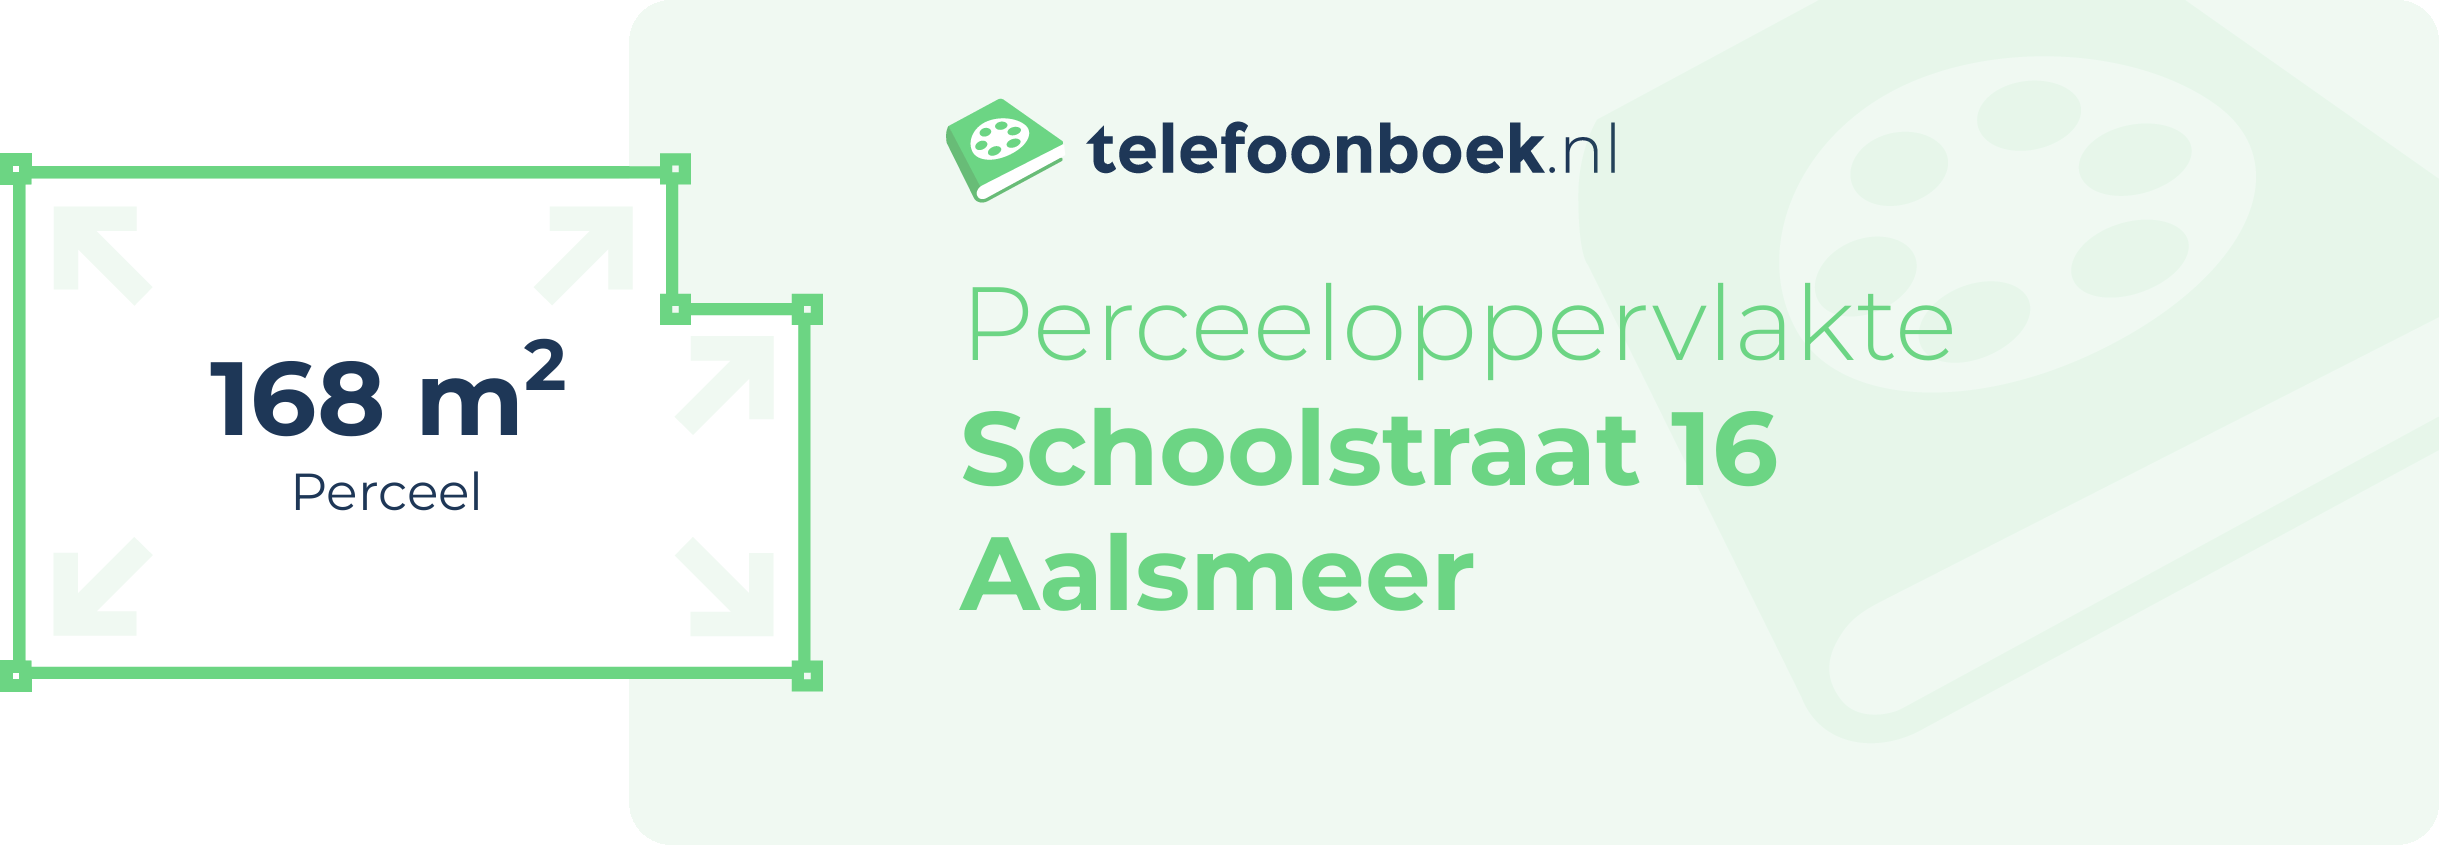 Perceeloppervlakte Schoolstraat 16 Aalsmeer